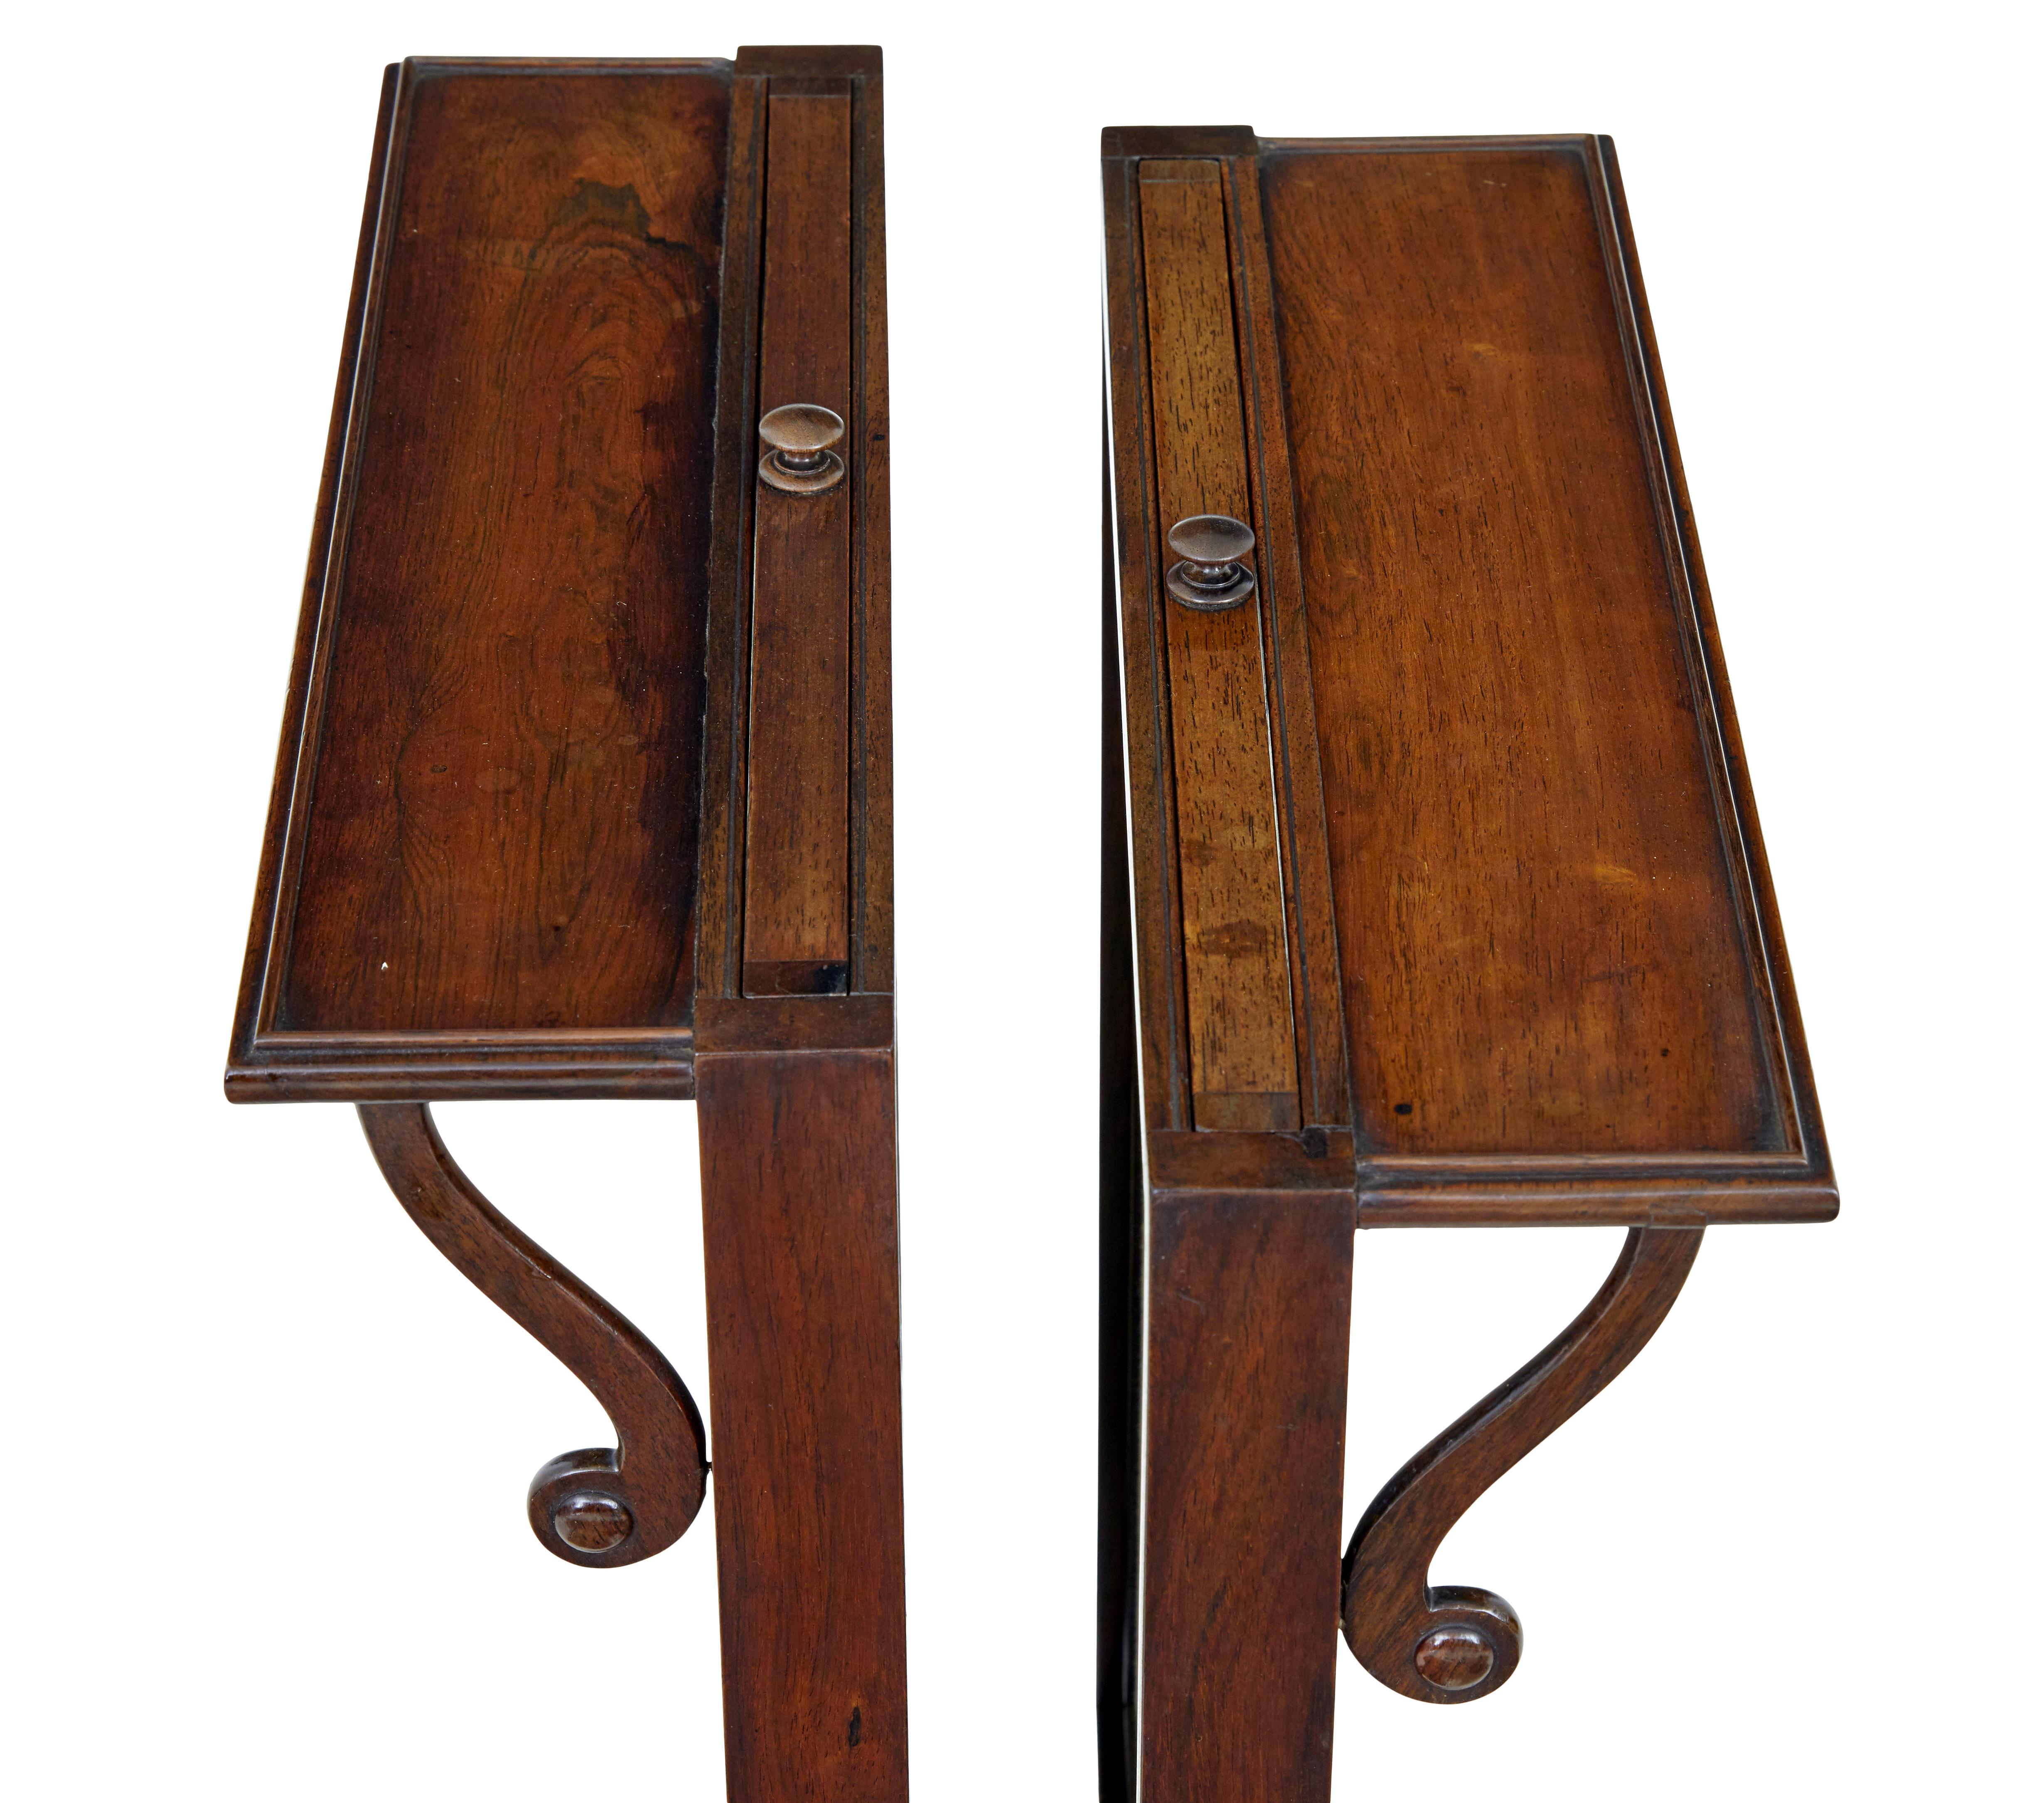 Feines Paar von Regency-Palisander-Kaminschirmen um 1820.

Ein schönes Stück Design des frühen 19. Jahrhunderts. Die Schirme halten durch Reibung und sind verstellbar. Auffälliger Palisander mit guter Farbe und Patina.  Sie sind selten in einem Paar